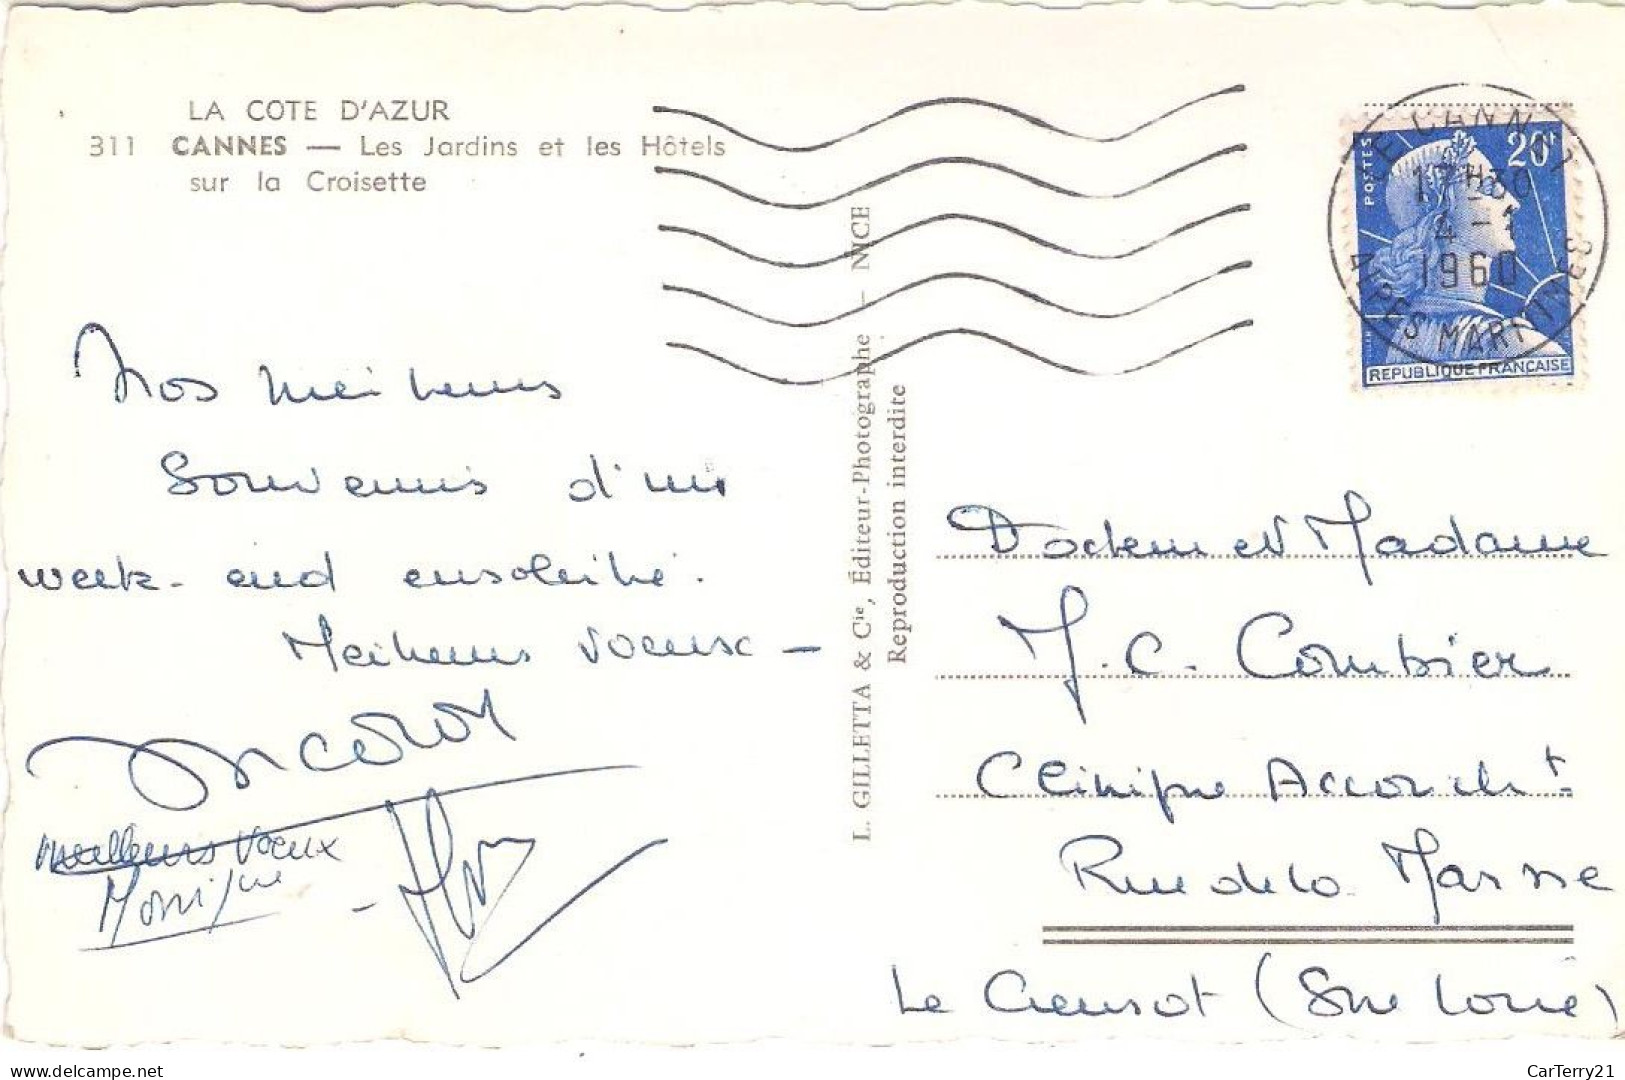 06. CANNES. JARDINS ET HÔTELS SUR LA CROISETTE. 1960. - Cannes